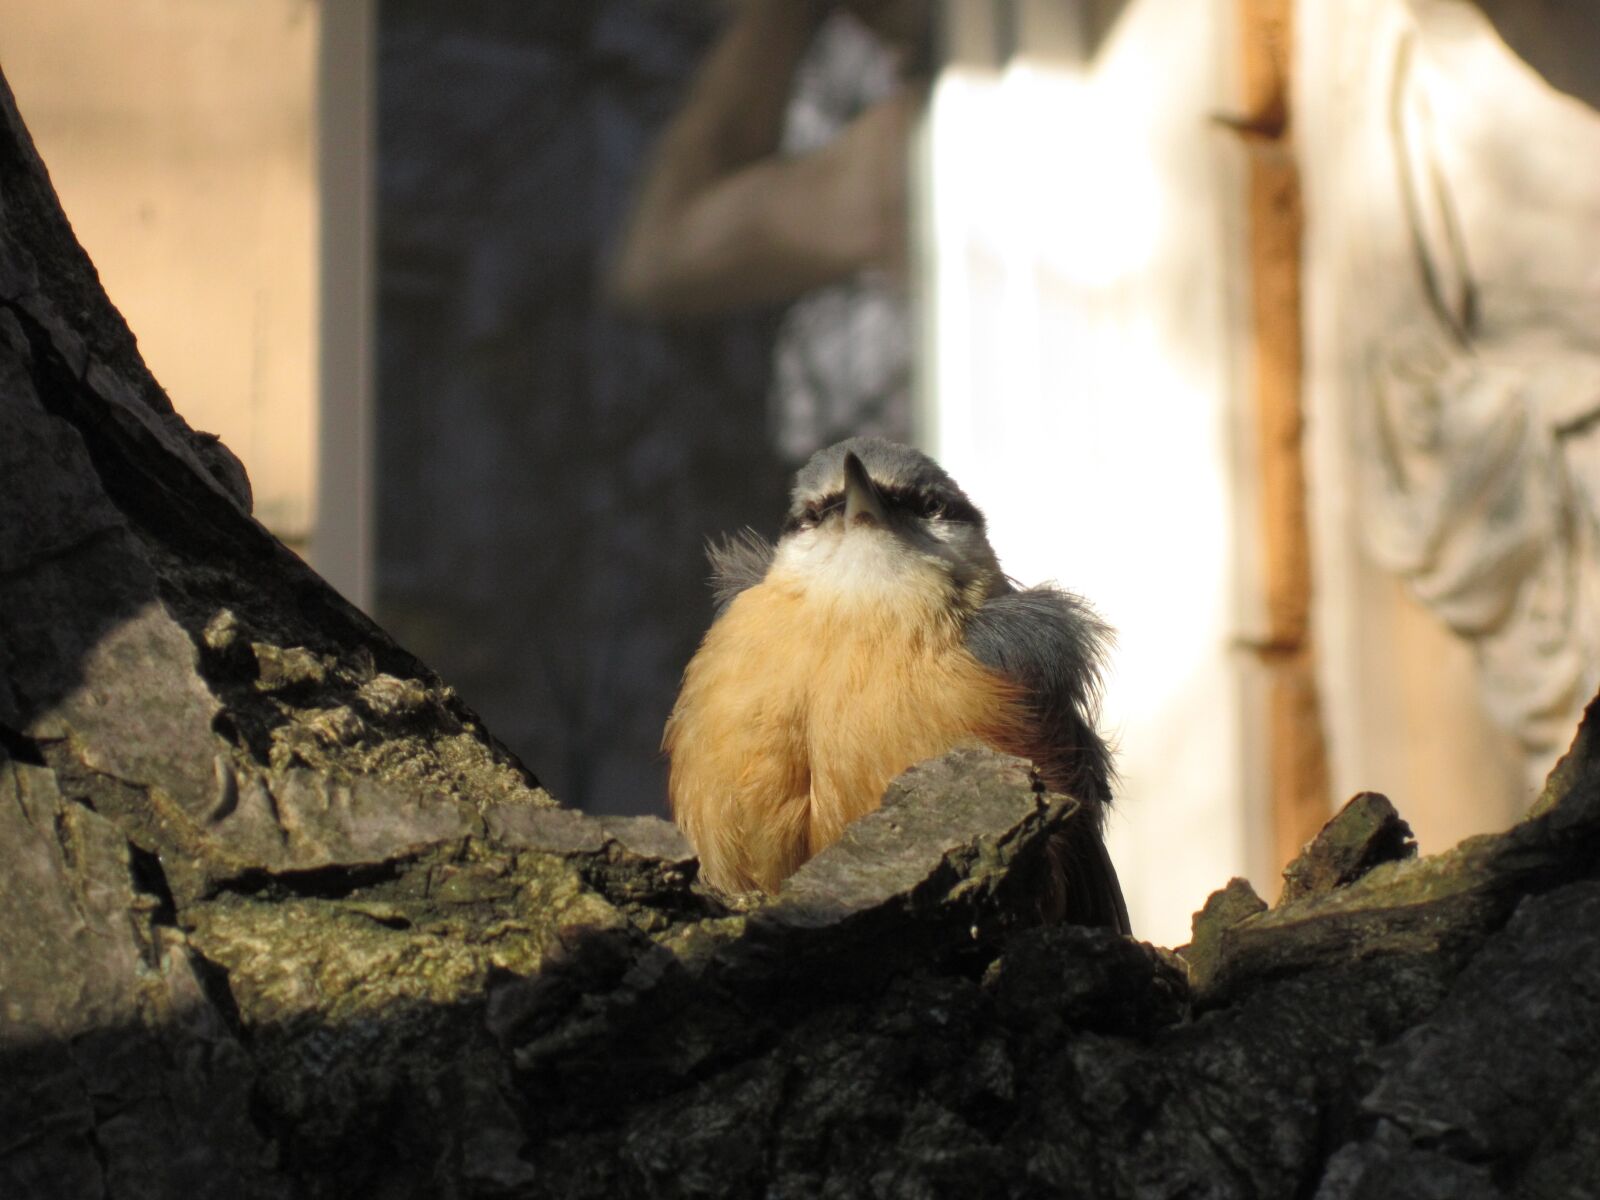 Canon PowerShot A3200 IS sample photo. Songbird, young bird, precocial photography